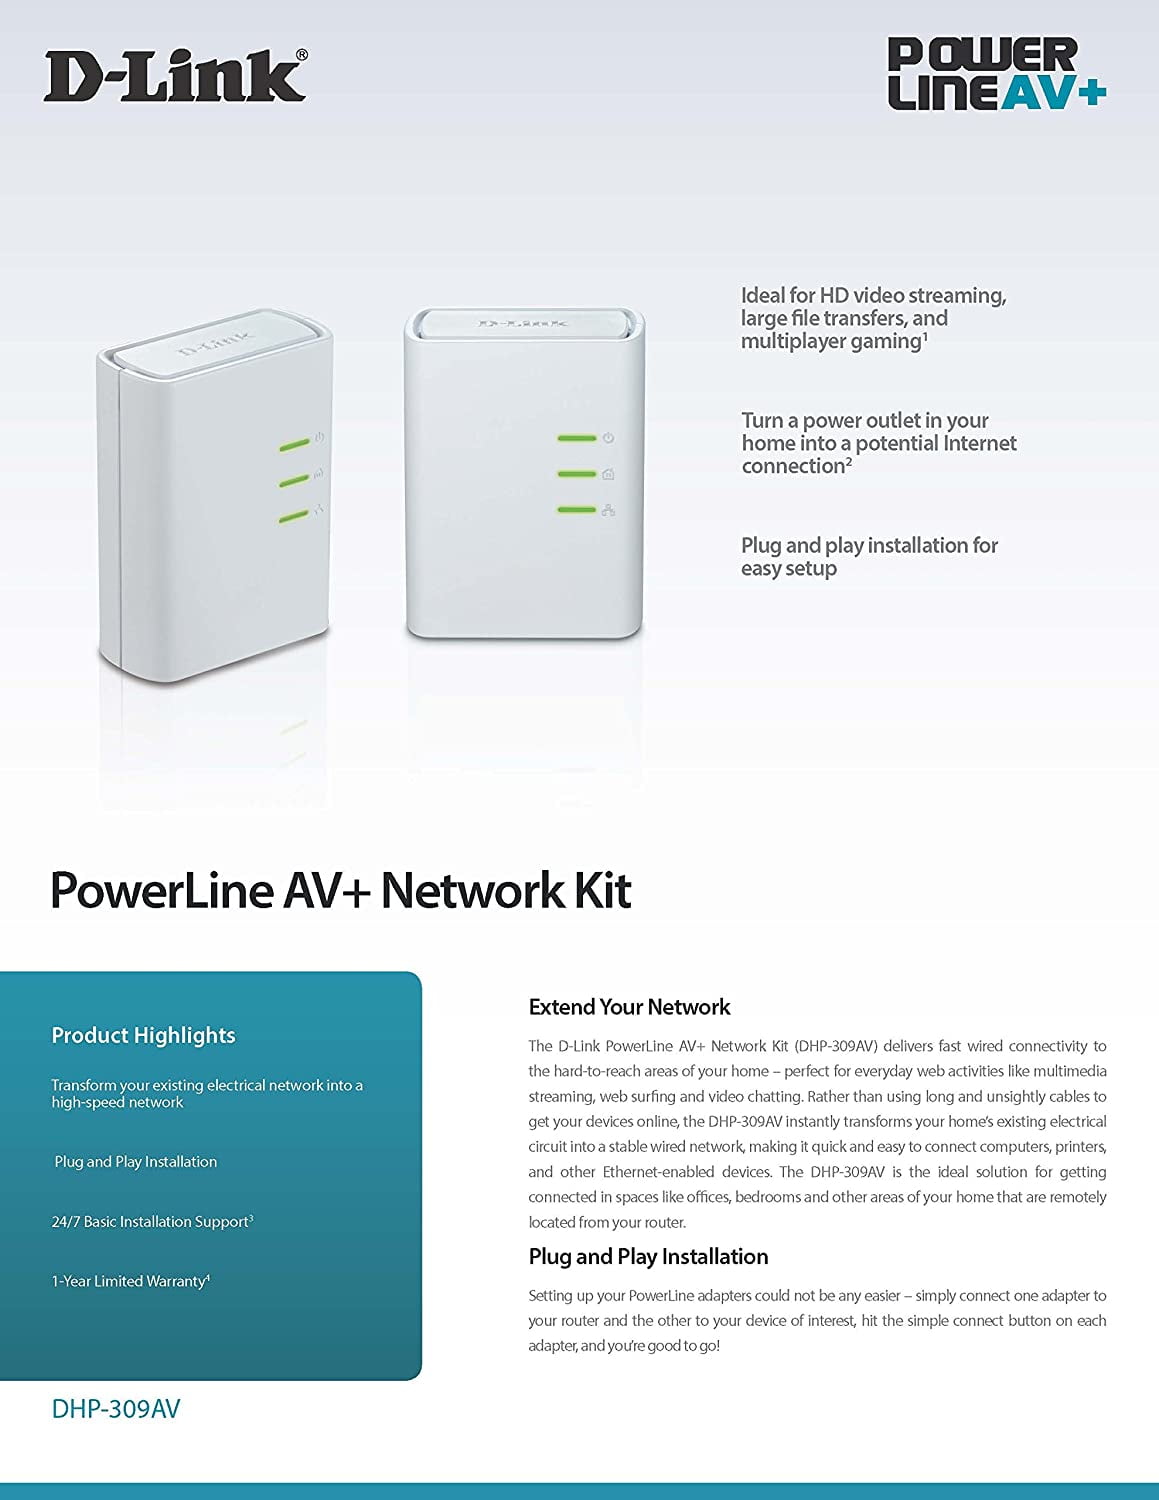 powerline av 500 network kit review